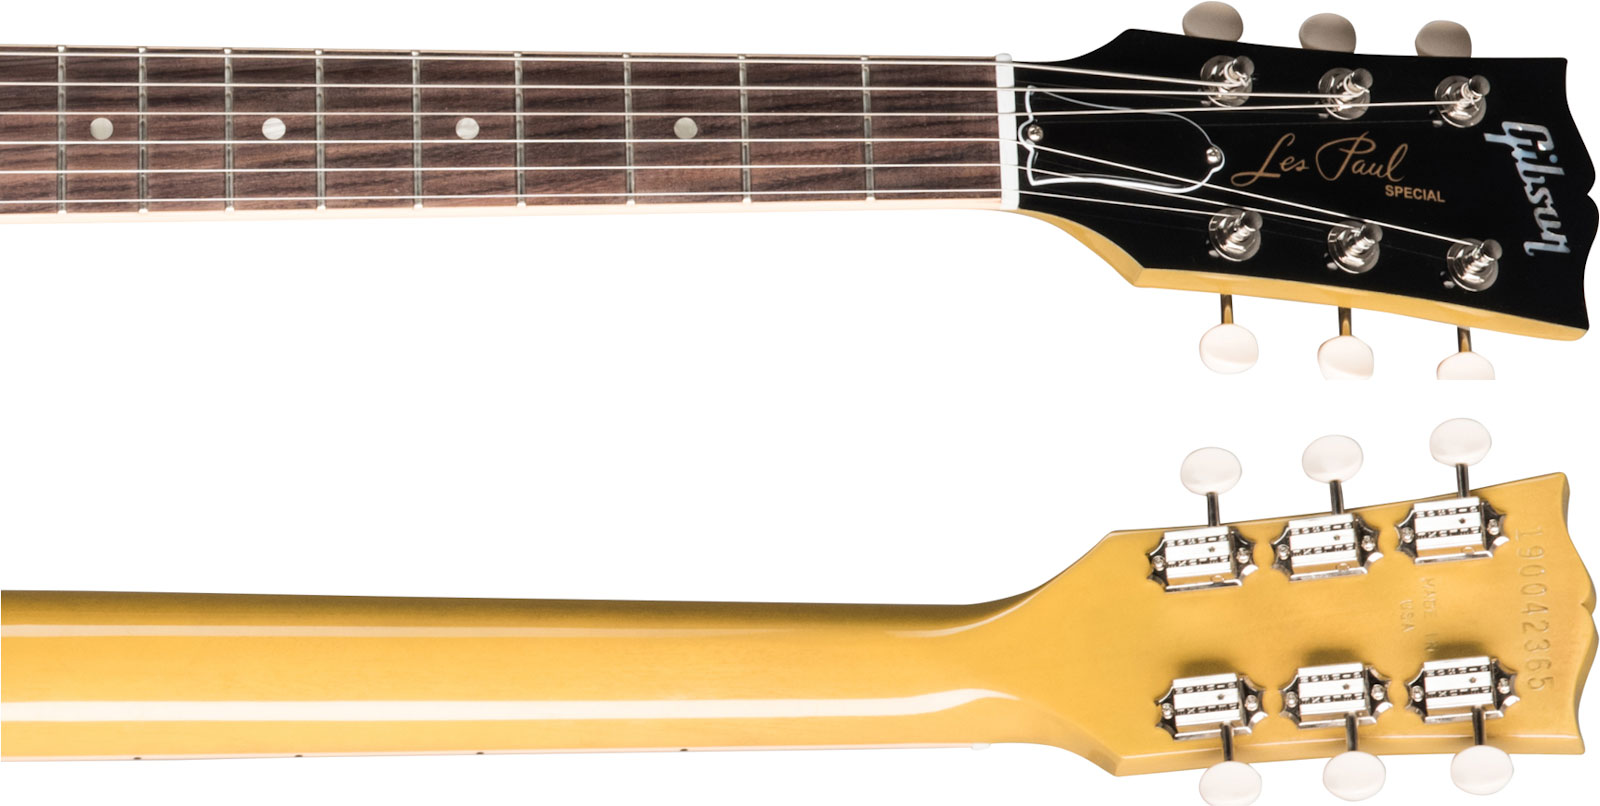 Gibson Les Paul Special Original 2p90 Ht Rw - Tv Yellow - Enkel gesneden elektrische gitaar - Variation 3